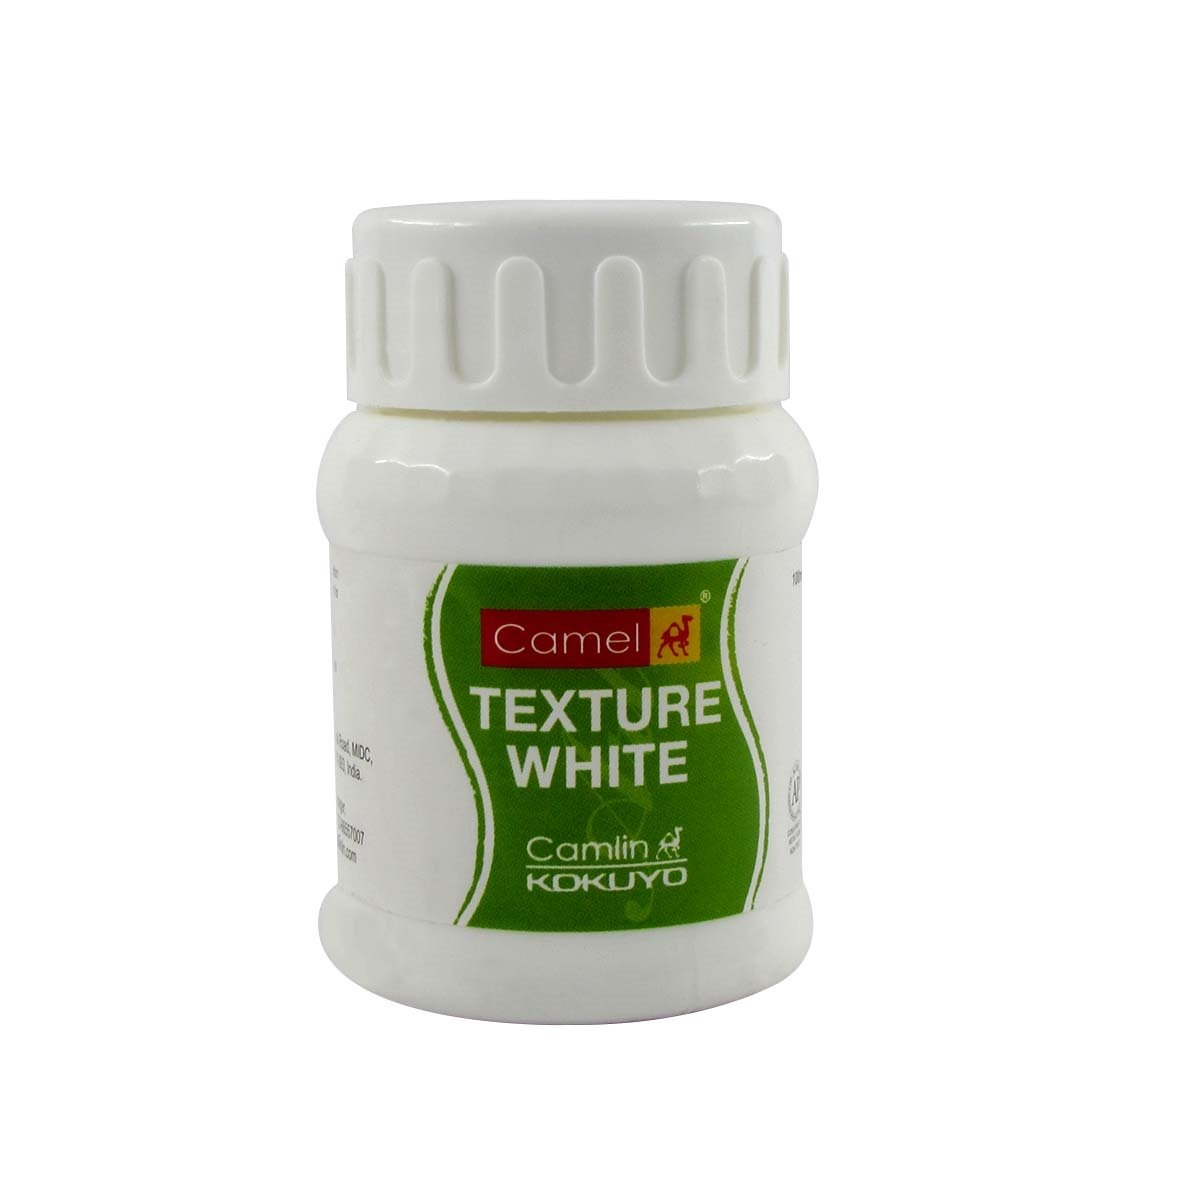 Camel Texture White (100ml)